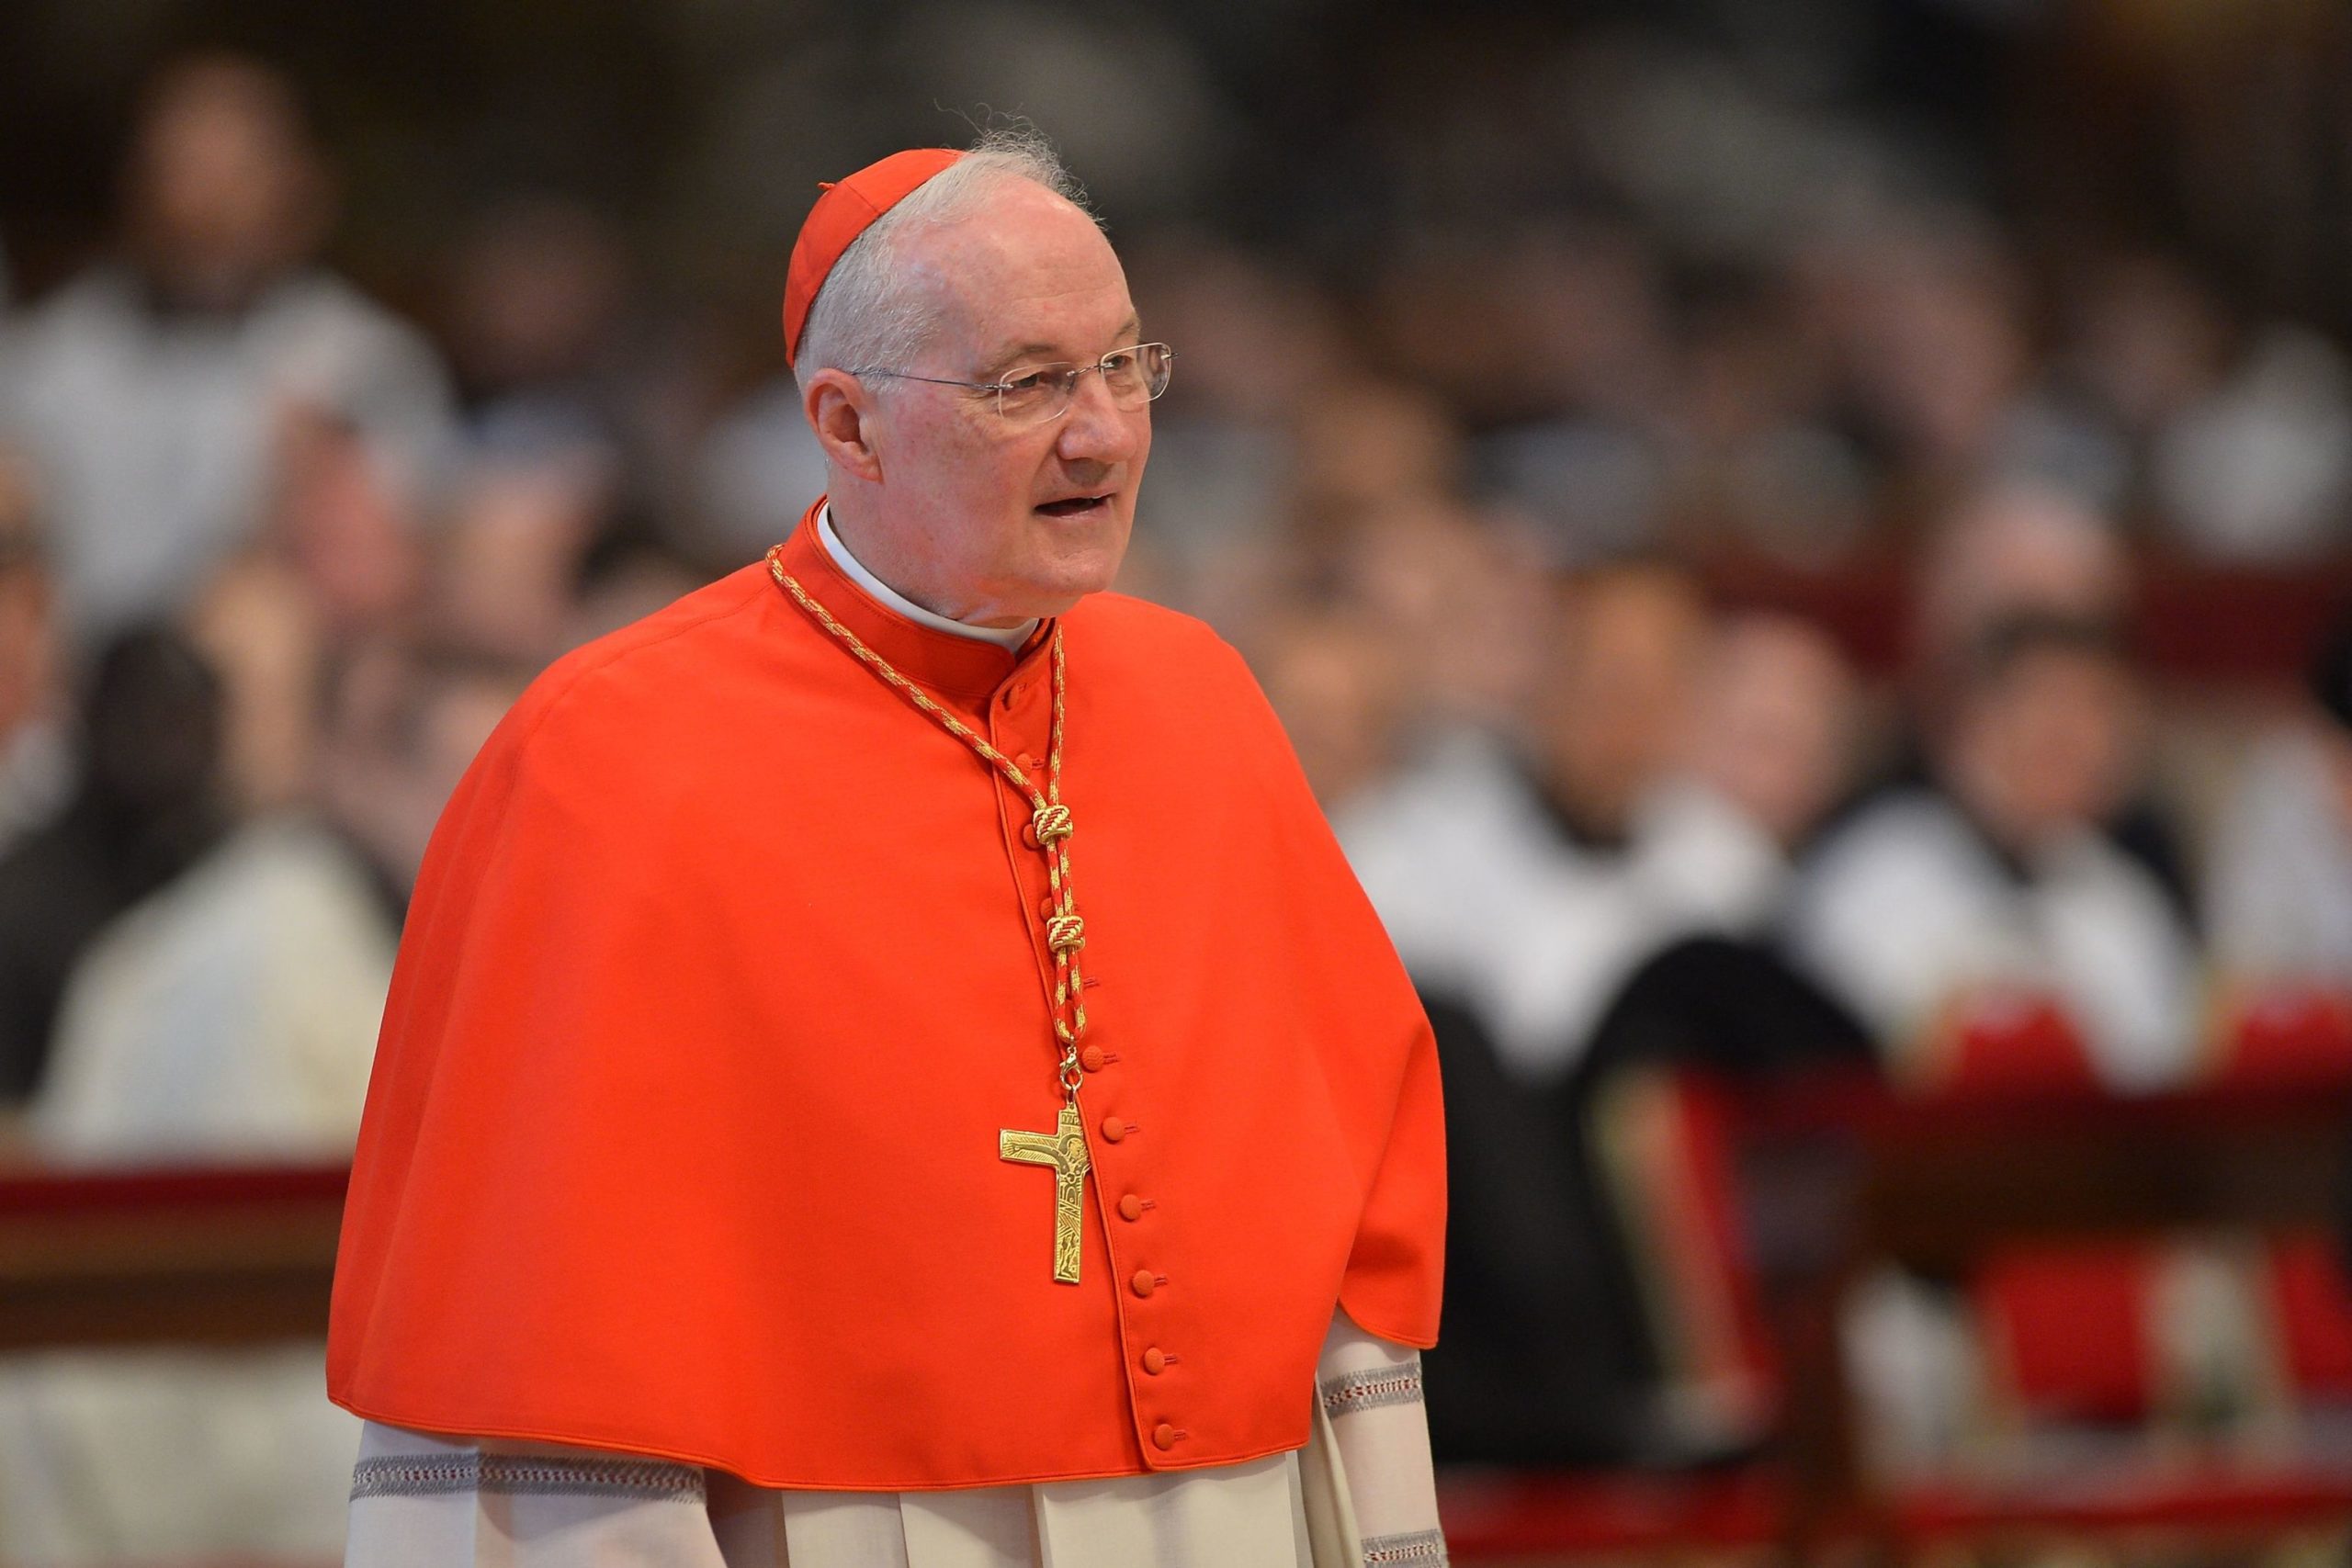 El Papa Francisco acepta la renuncia del cardenal Ouellet, acusado de agresiones sexuales